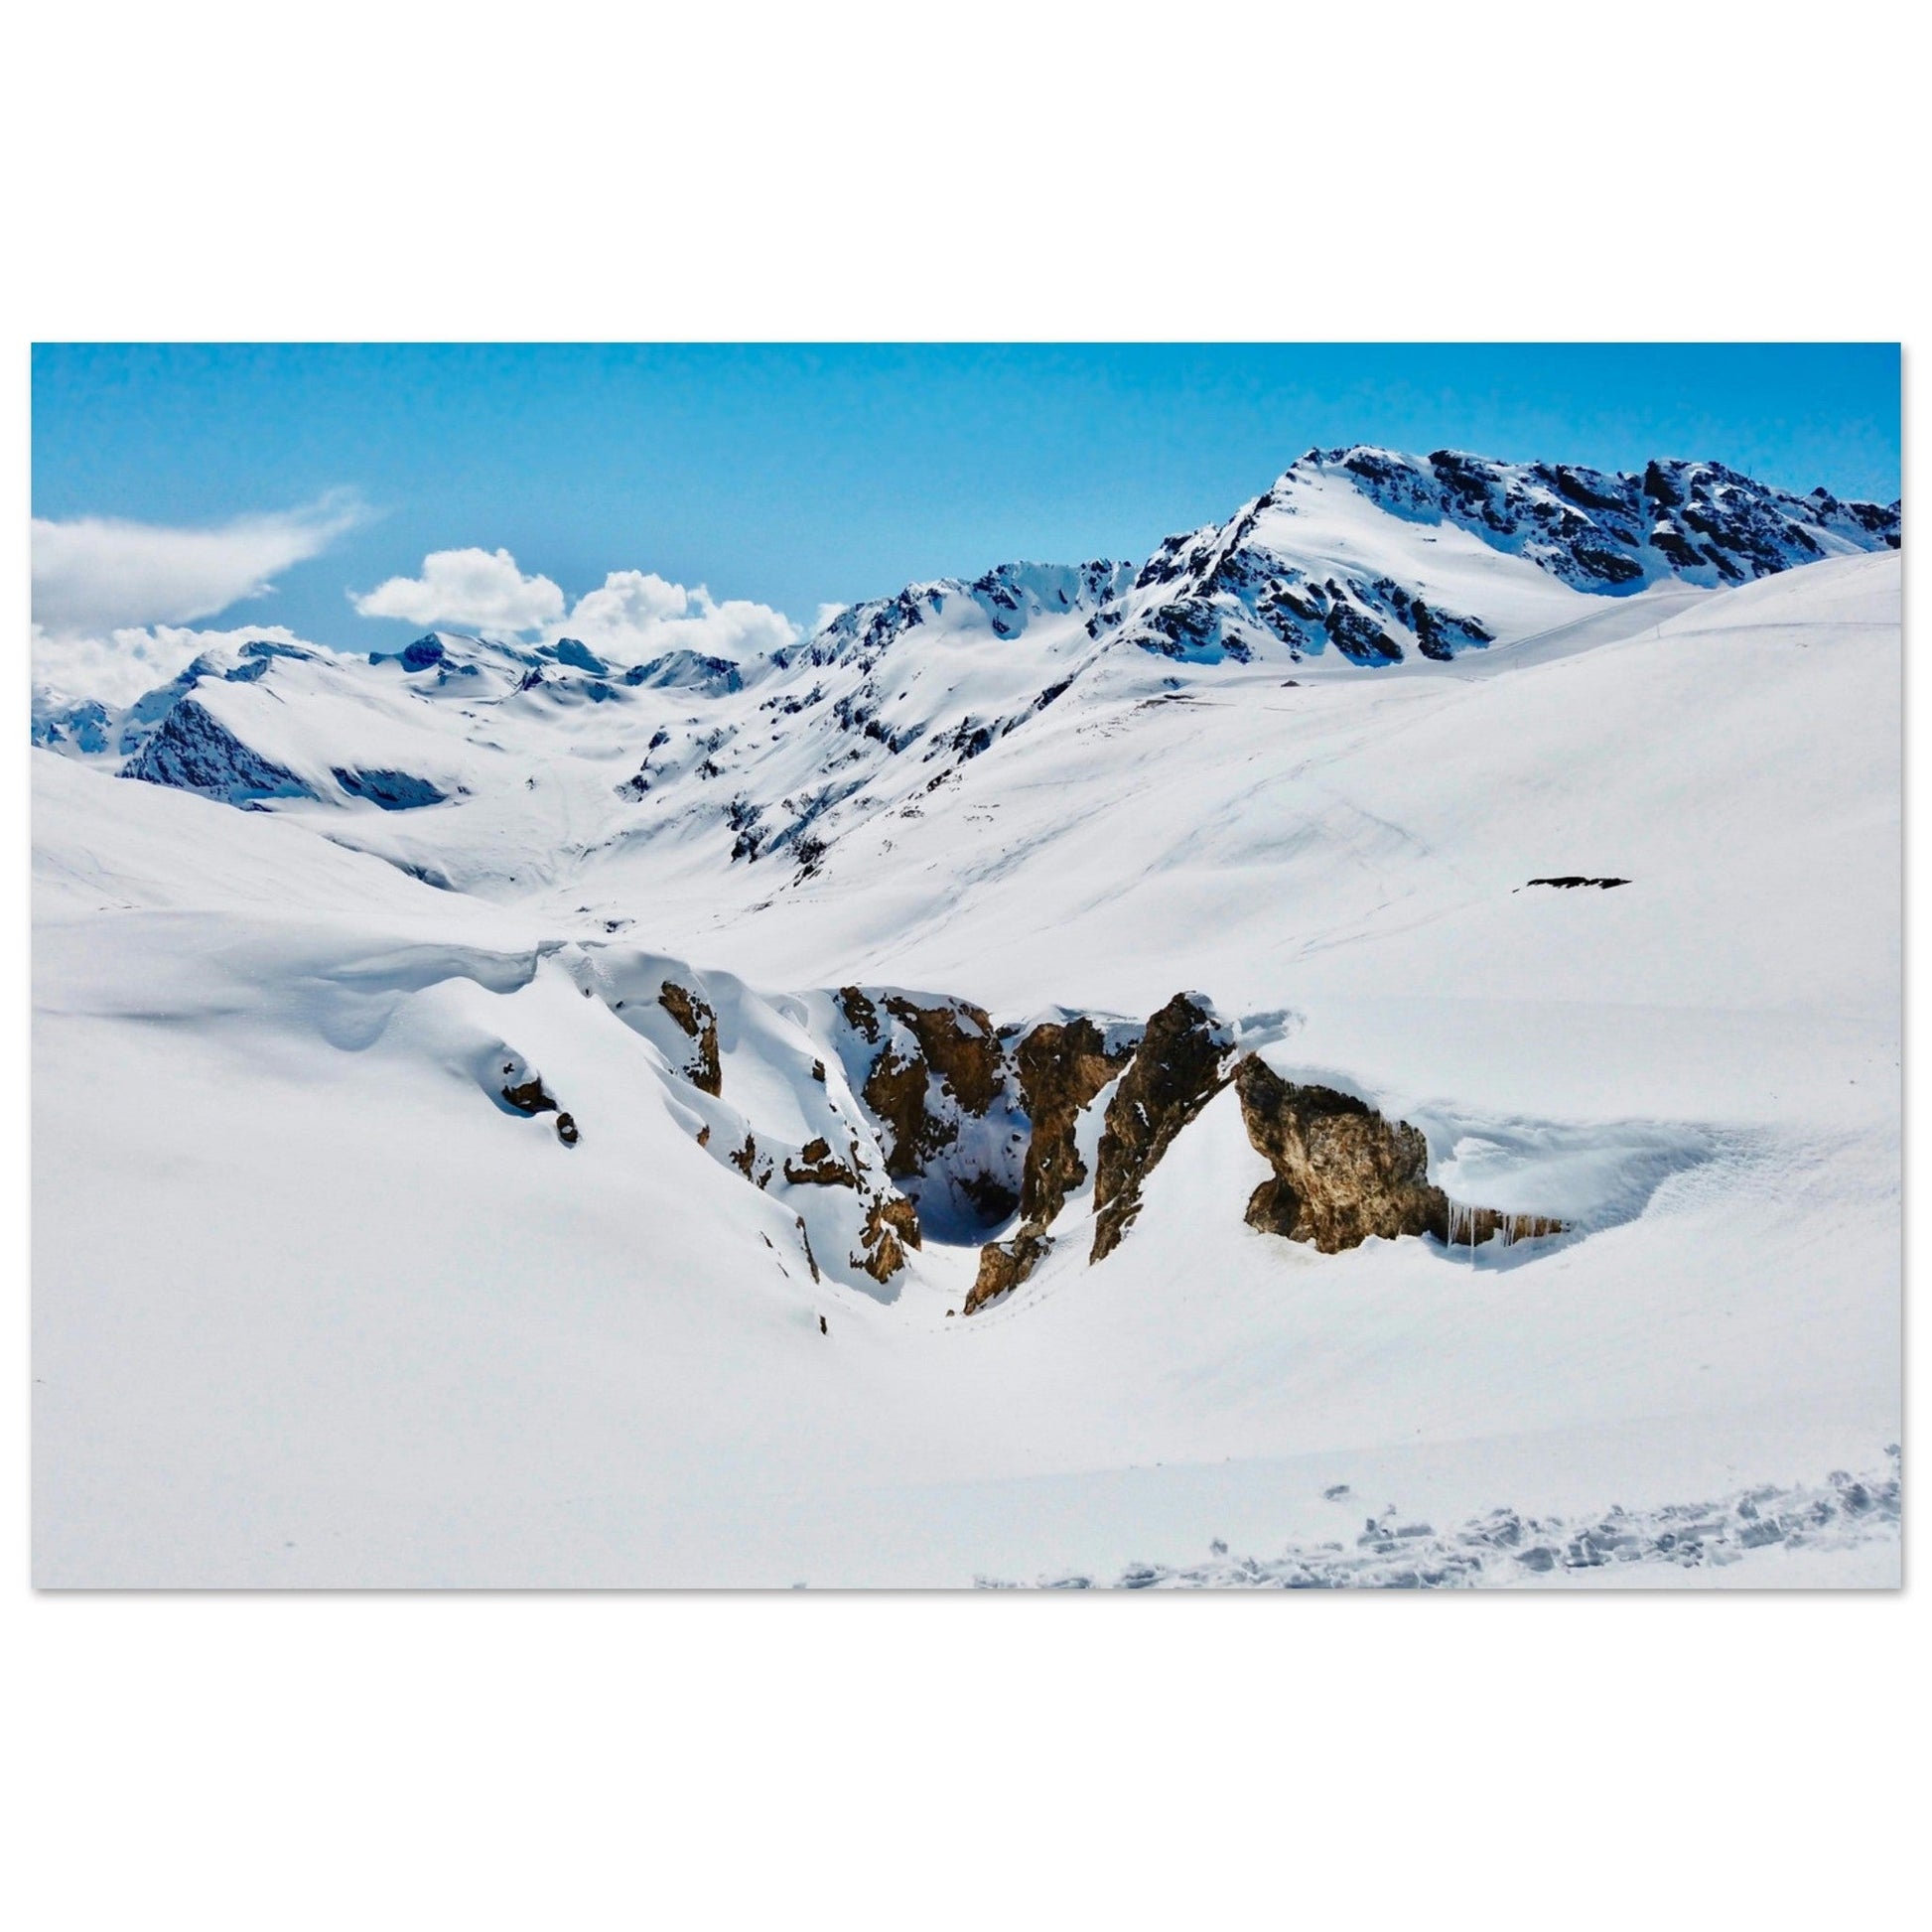 Vente Photo de Val d'Isère en hiver #10 - Tableau photo alu montagne